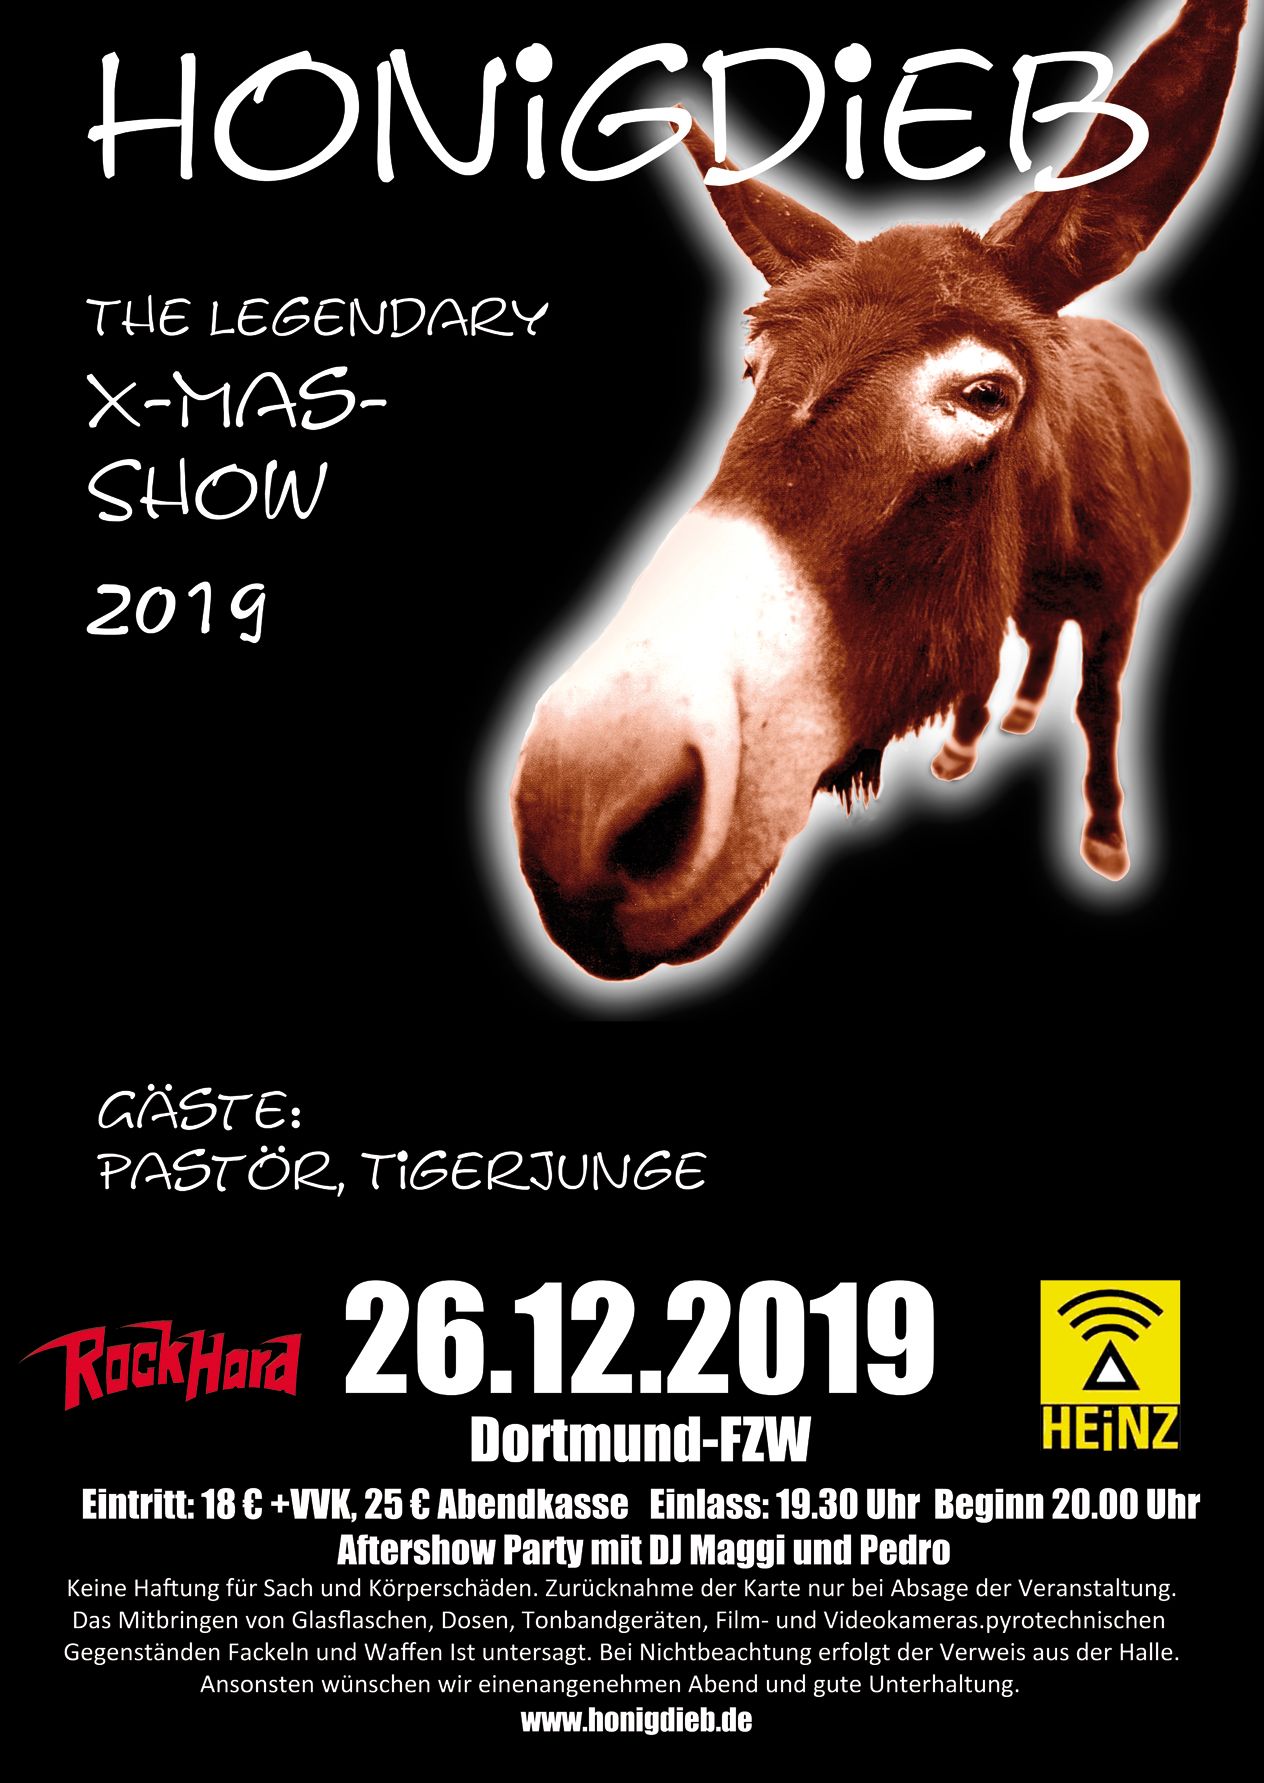 Das legendäre X-Mas-Konzert am 26. Dezember in Dortmund